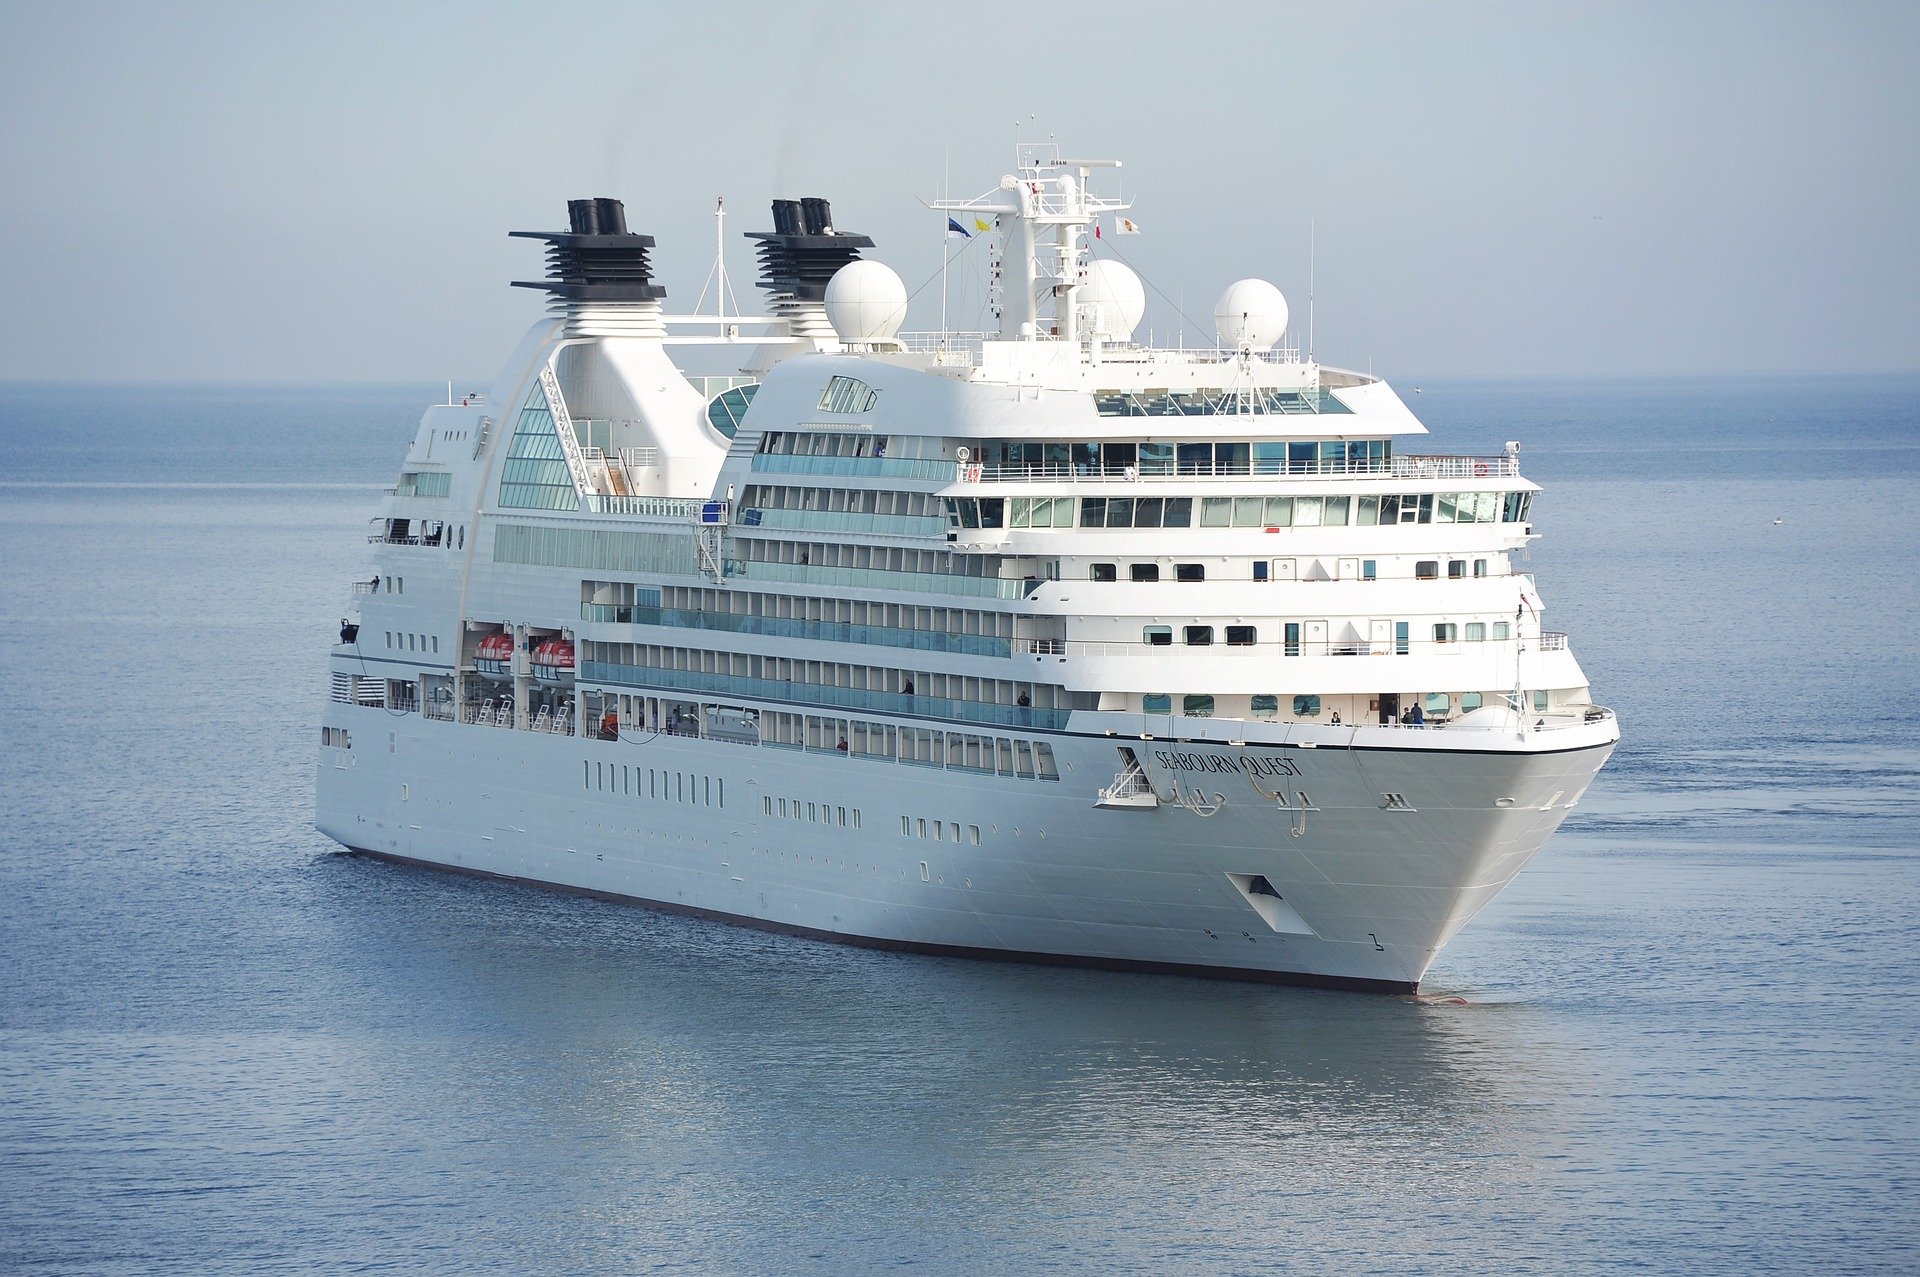 Plons roterend Faculteit Cruisetarieven - Alle cruise aanbiedingen op een rij!